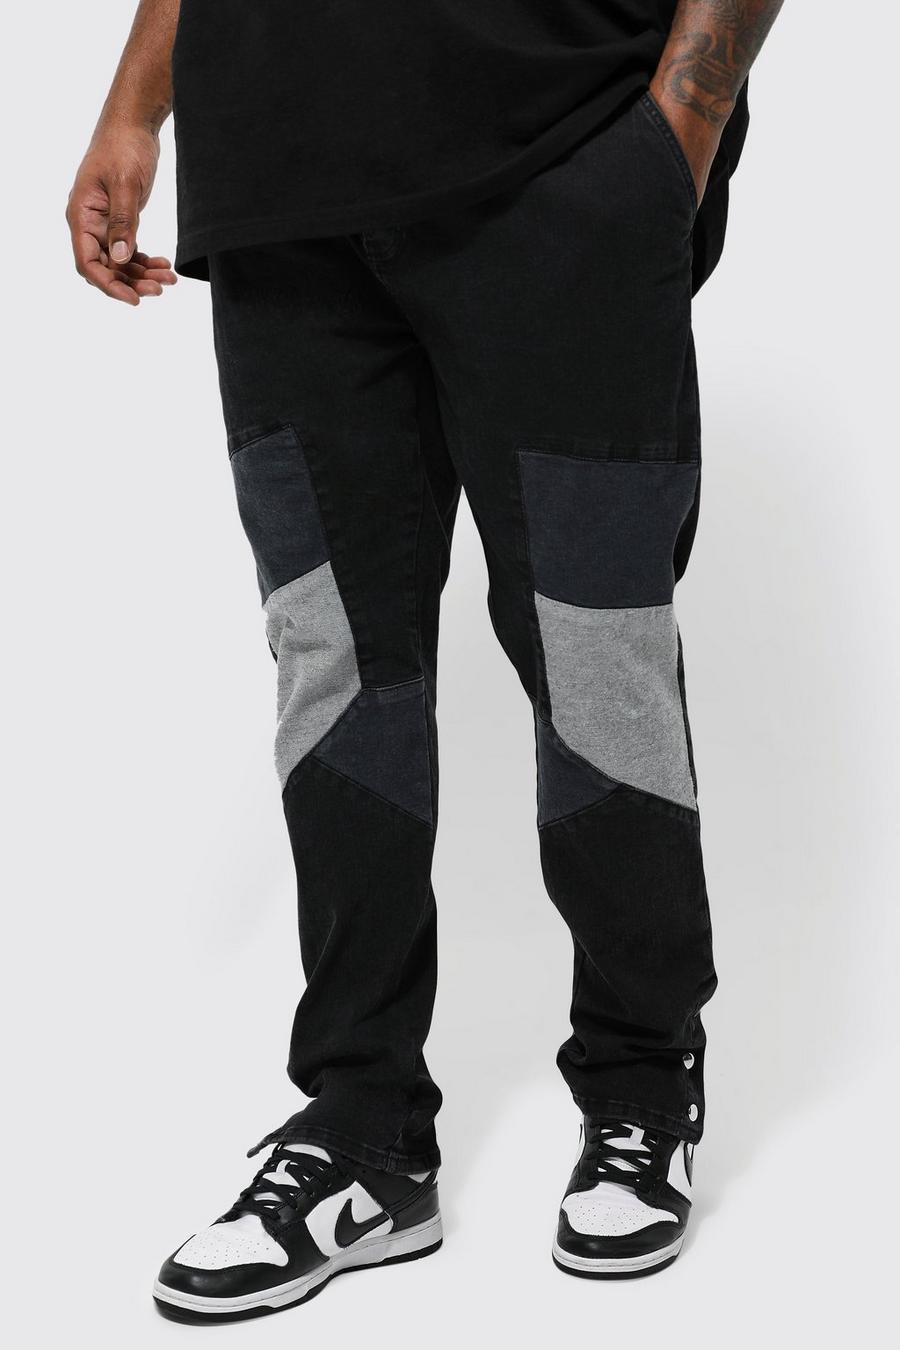 שחור דהוי ג'ינס סקיני נמתח בסגנון ספורט מוטורי עם מכפלת תיקתקים, מידות גדולות